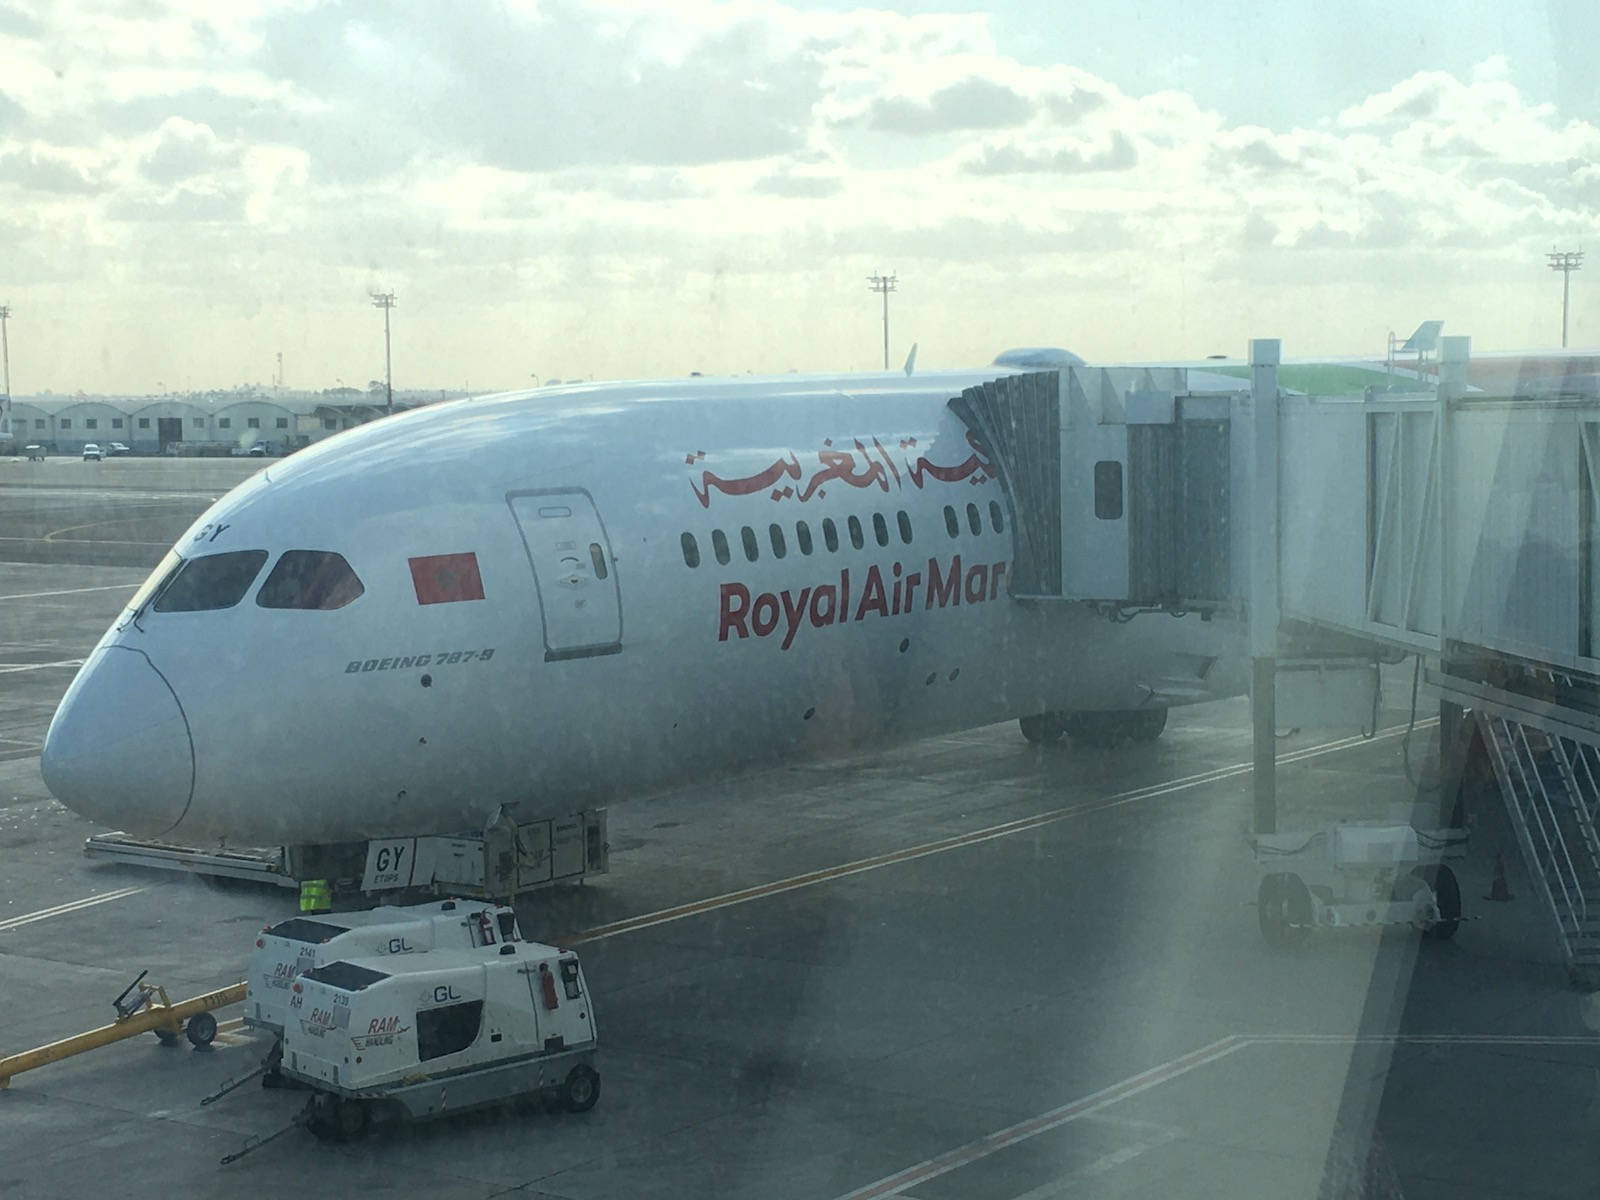 Aviónde Royal Air Maroc Y Coche En El Aeropuerto. Fondo de pantalla